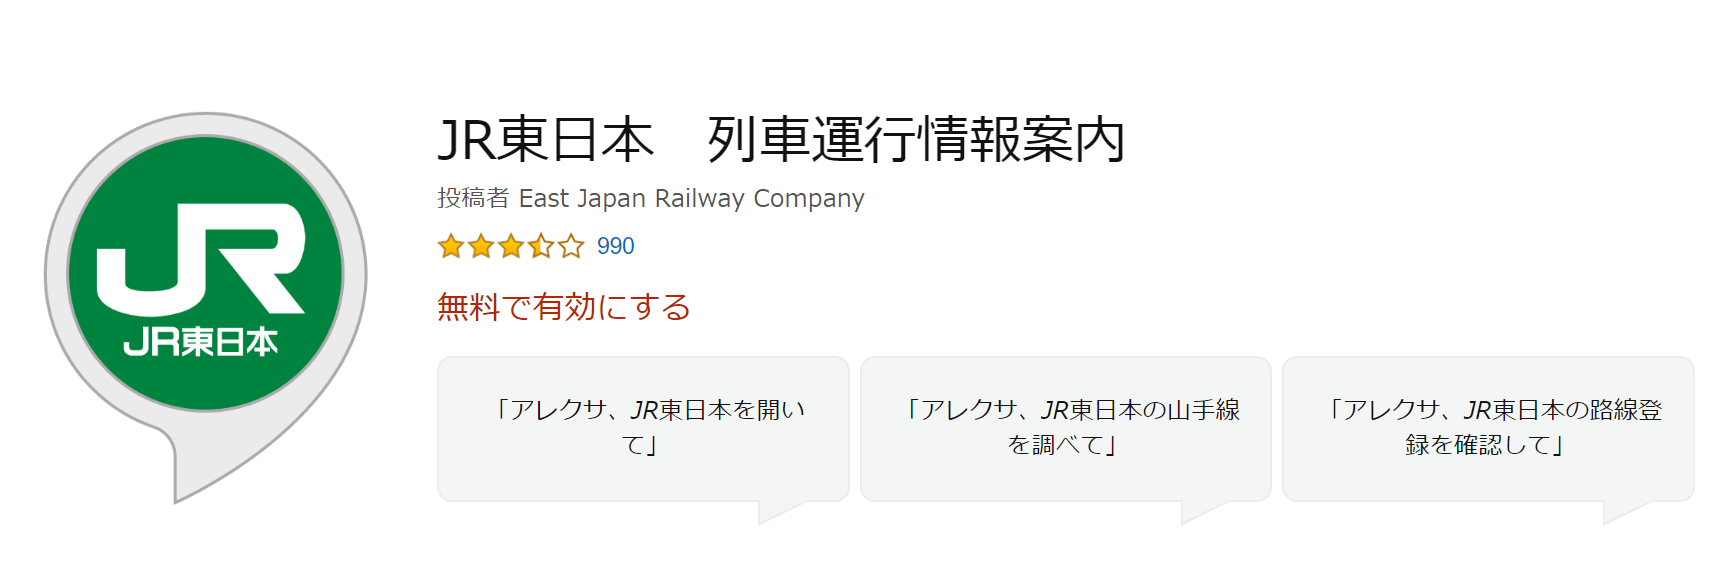 JR東日本列車運行情報案内